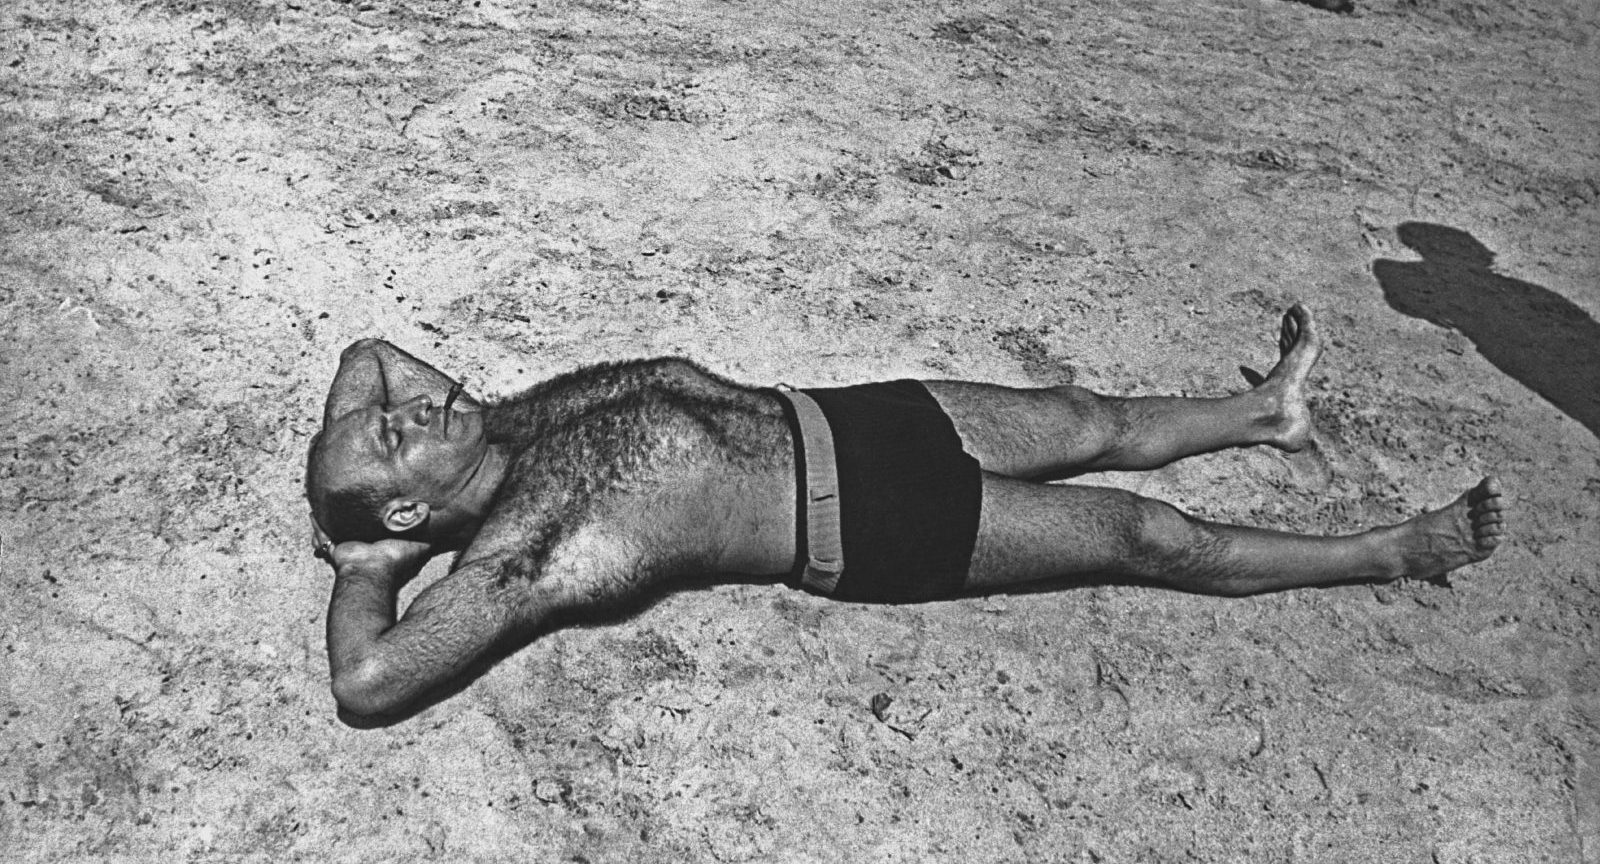 A man sunbathes, circa 1940